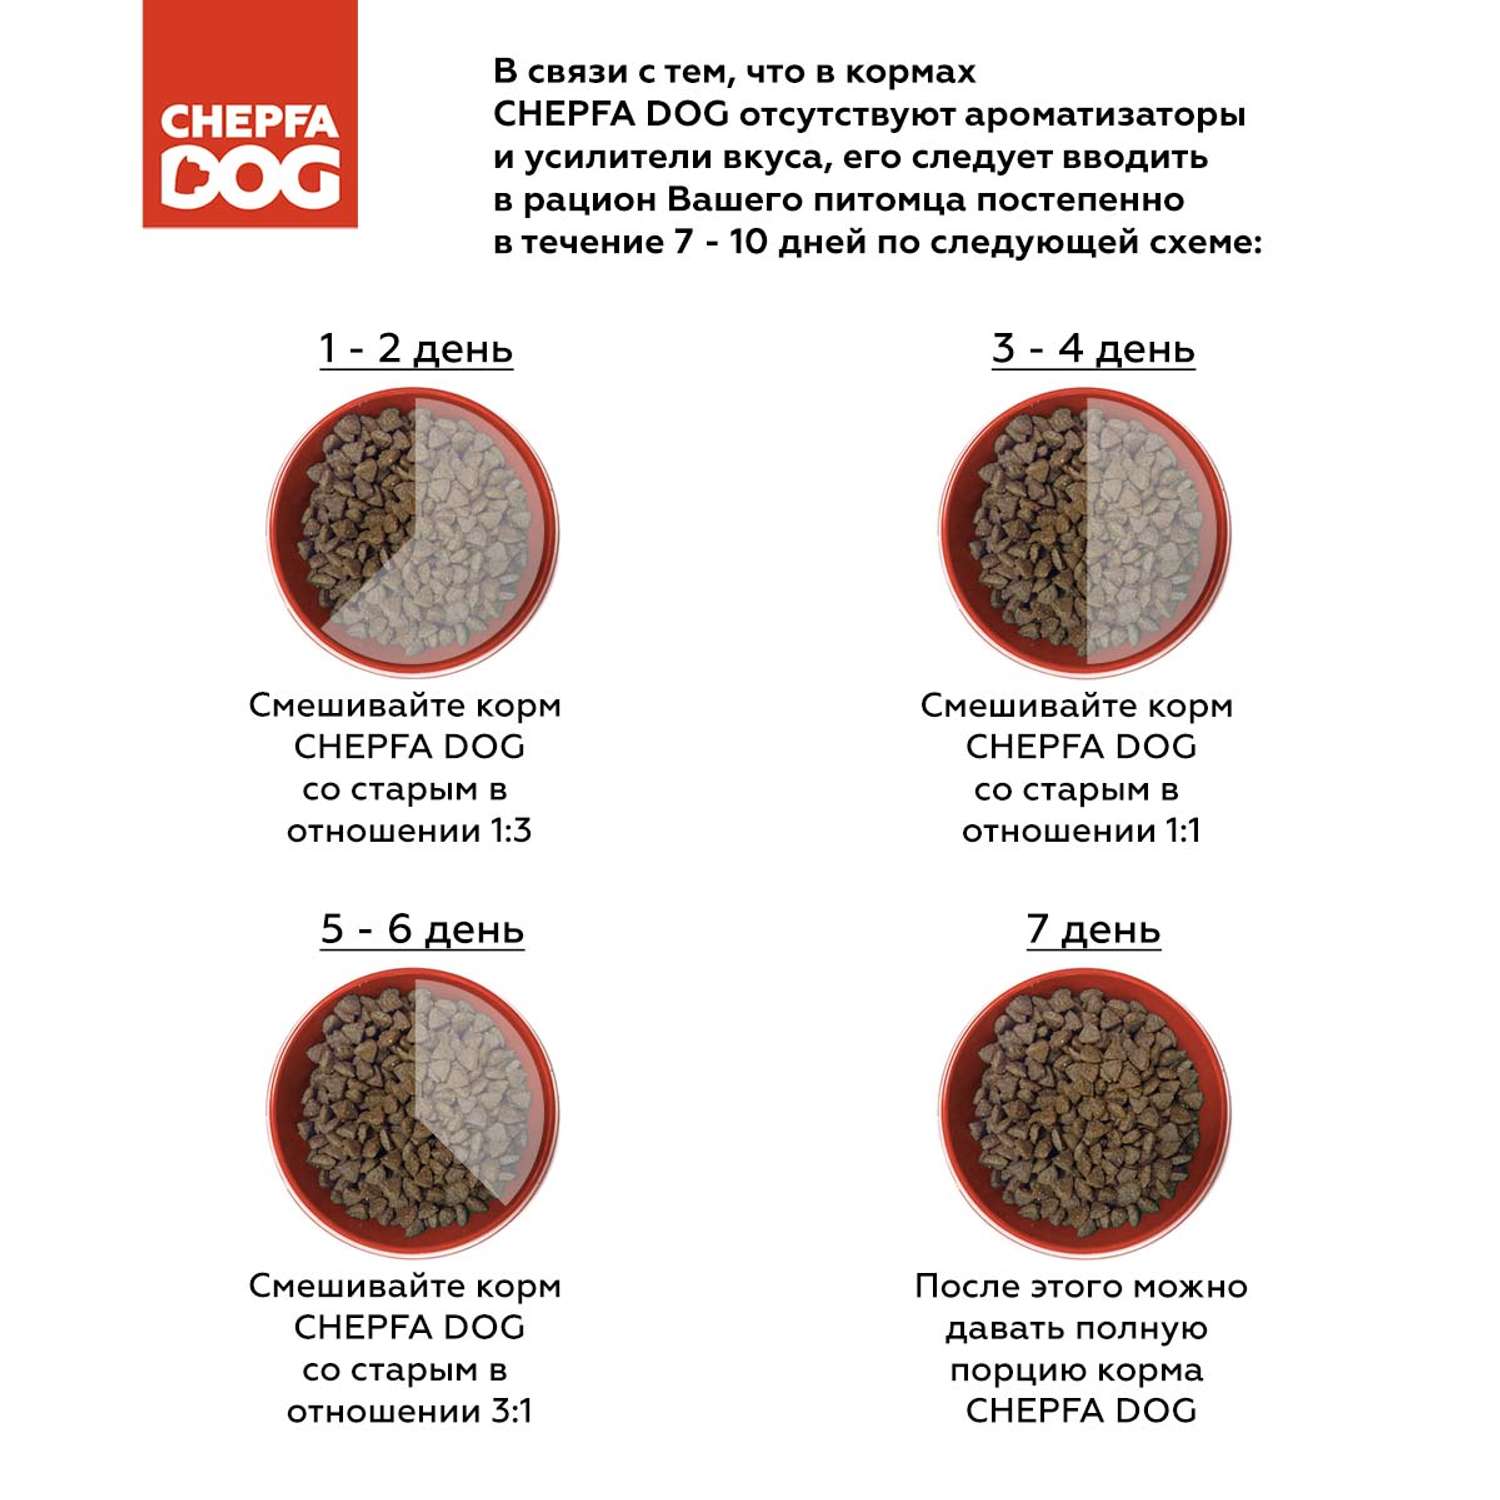 Сухой корм Chepfa Dog полнорационный ягненок и говядина 1.1 кг для взрослых собак средних и крупных пород - фото 5